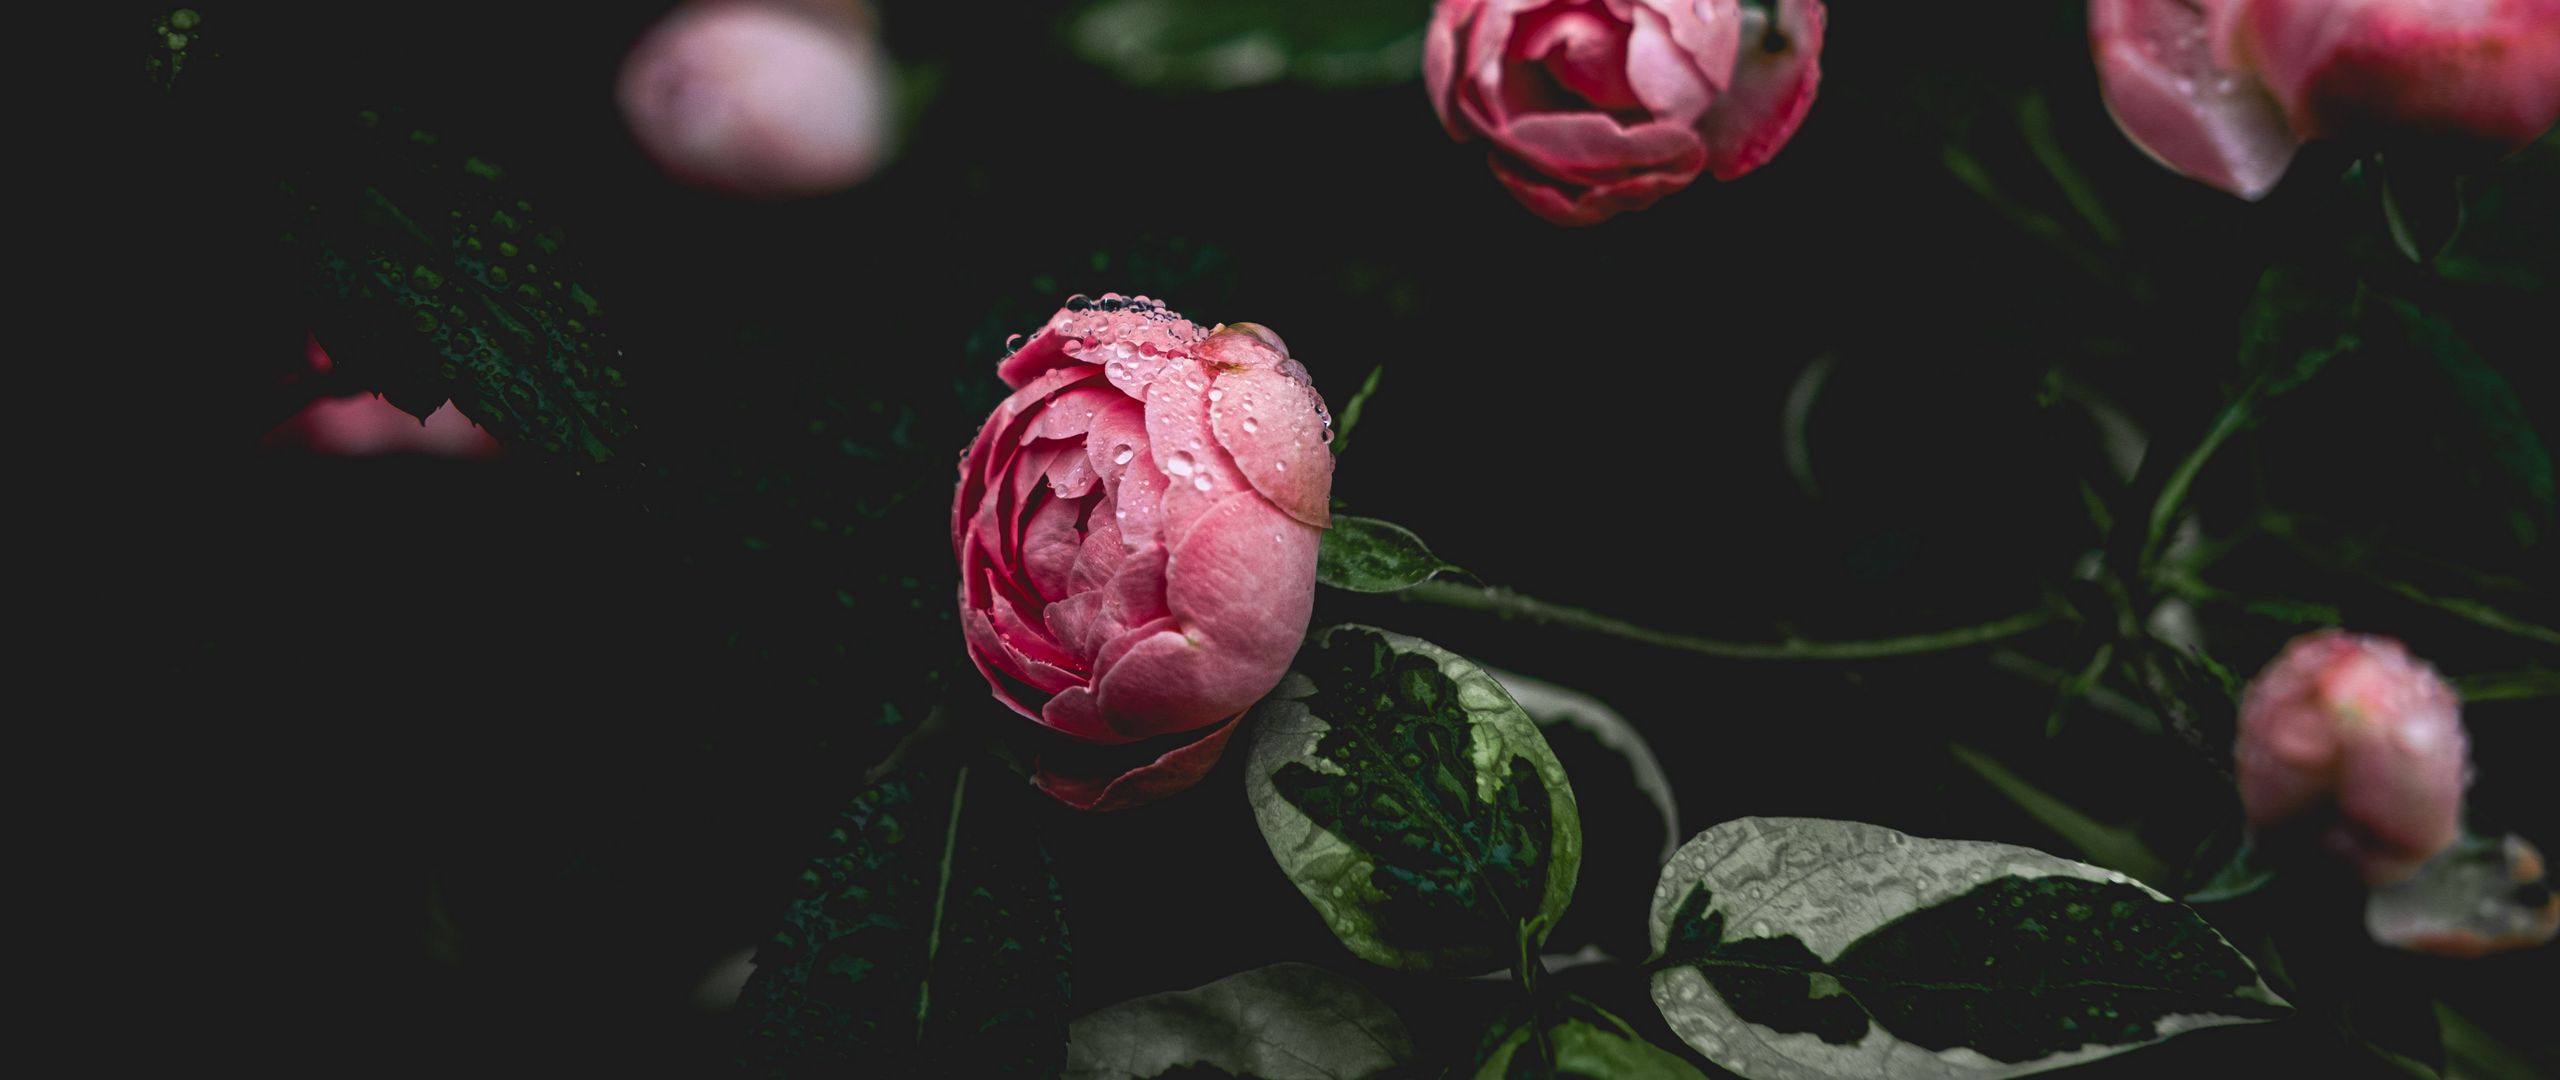 Hoa peony có màu sắc trầm màu, tuyệt đẹp và đặc biệt. Hãy chiêm ngưỡng vẻ đẹp của chúng qua hình ảnh để cảm nhận sự trang nhã và sang trọng của loài hoa này.